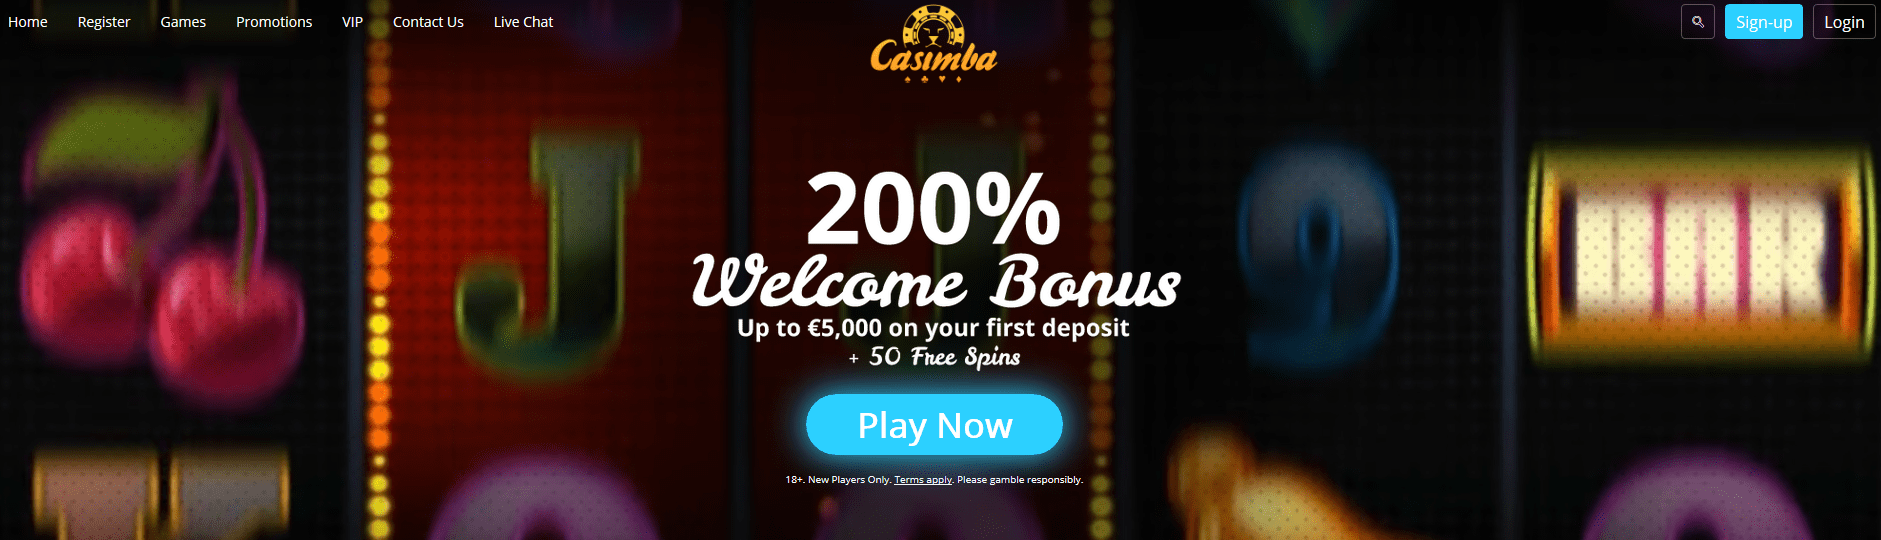 casimba casino review site